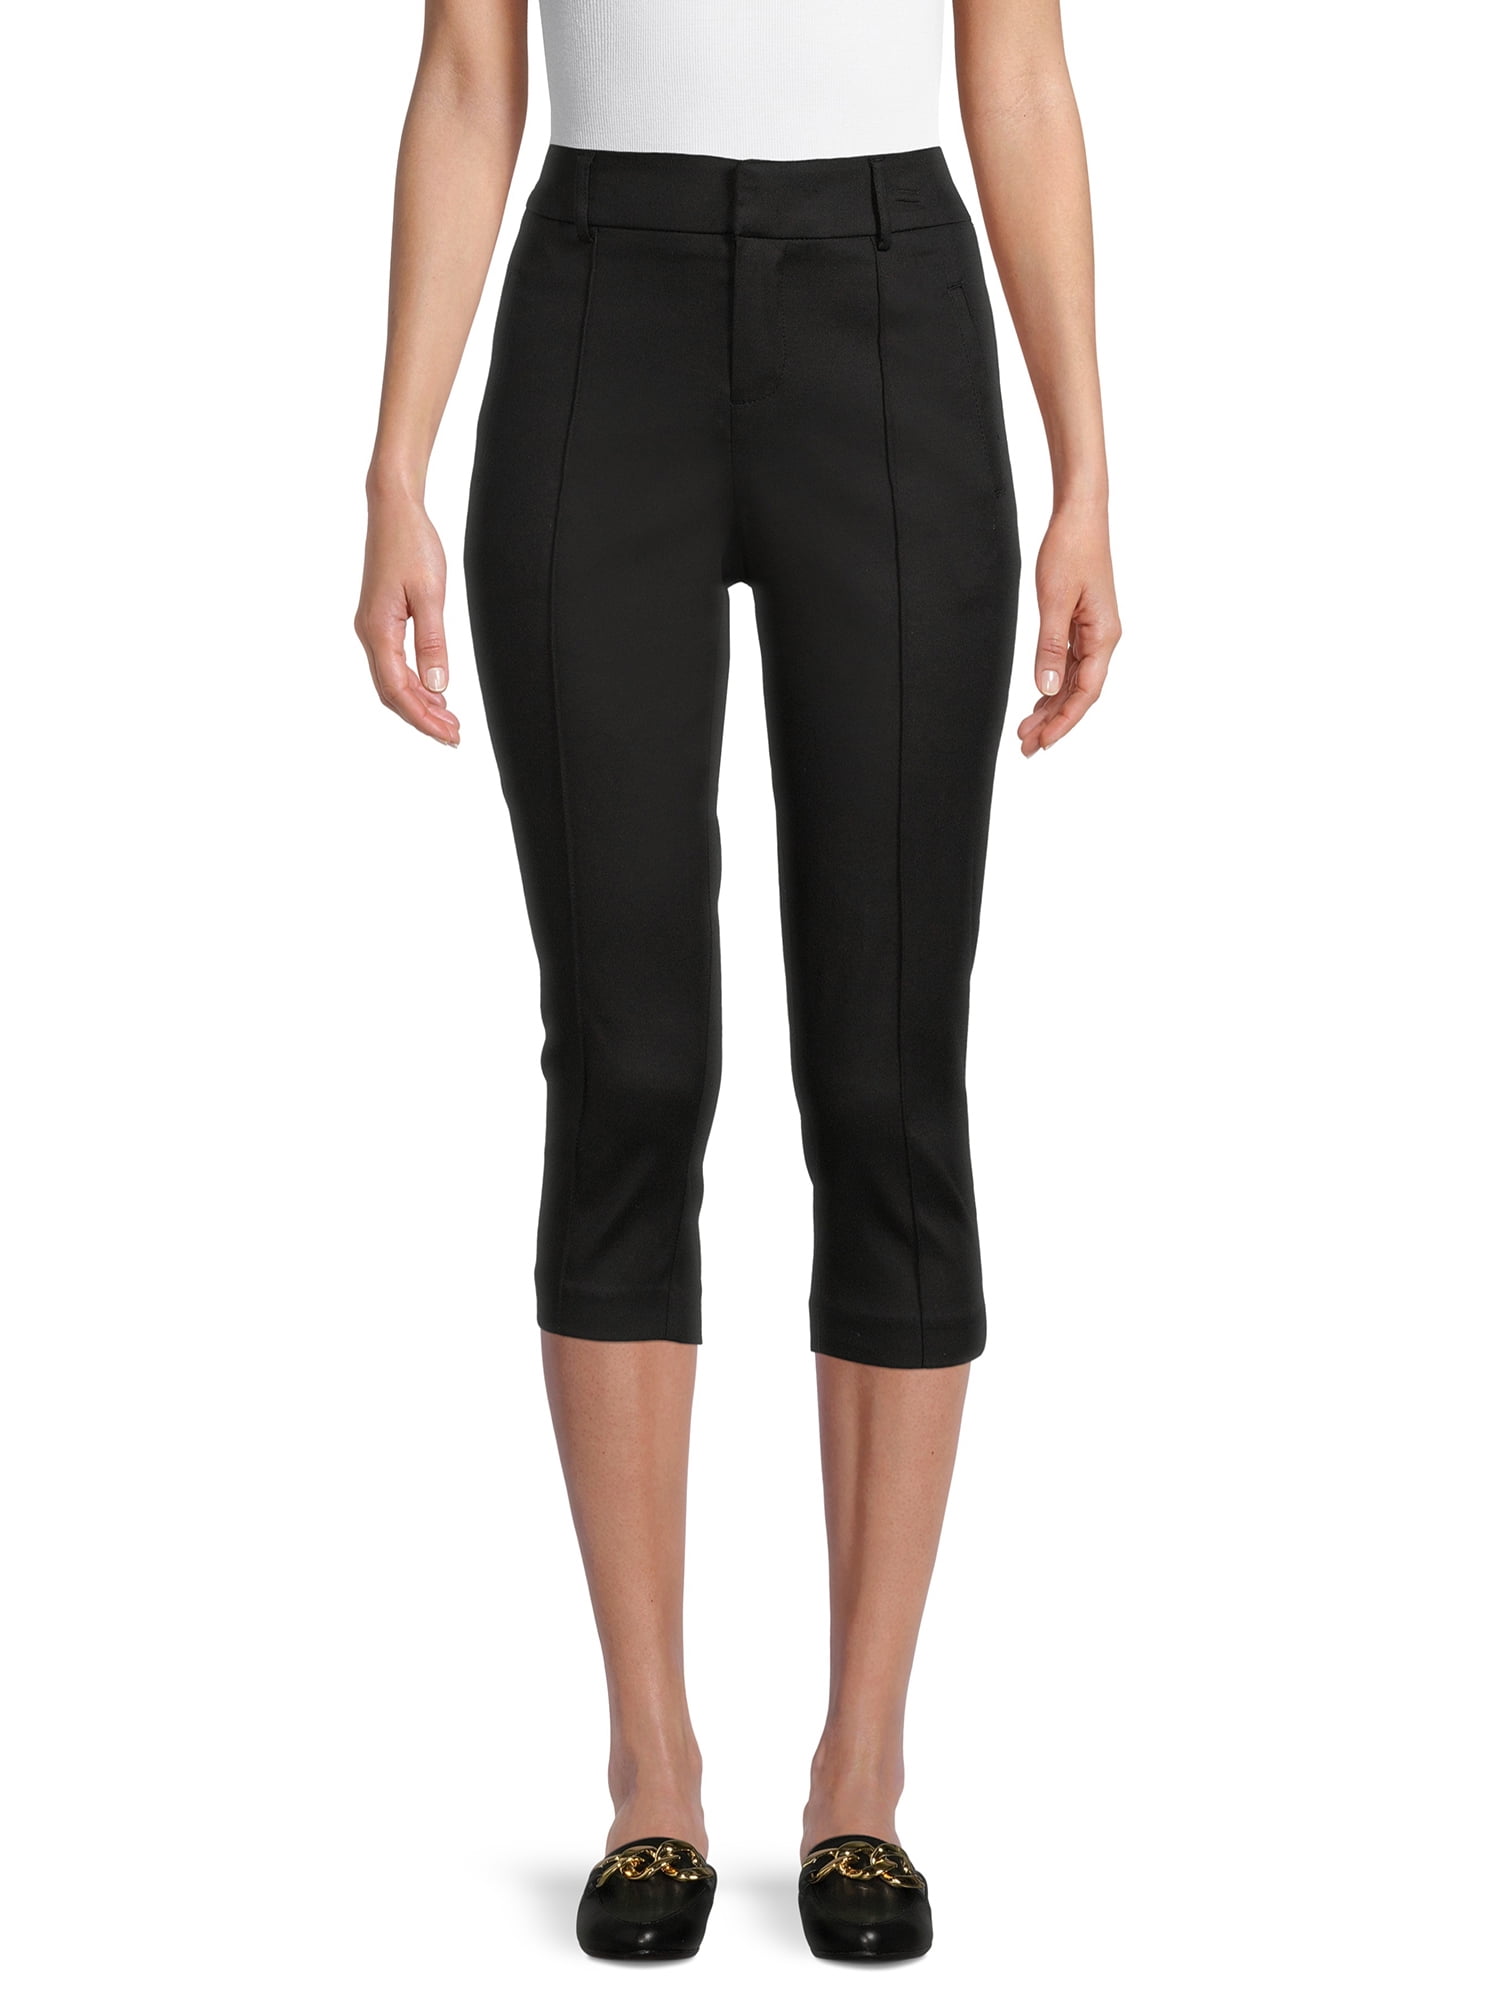 Time and Tru Women's Millennium Capri Pants Black Size L A4 for sale online